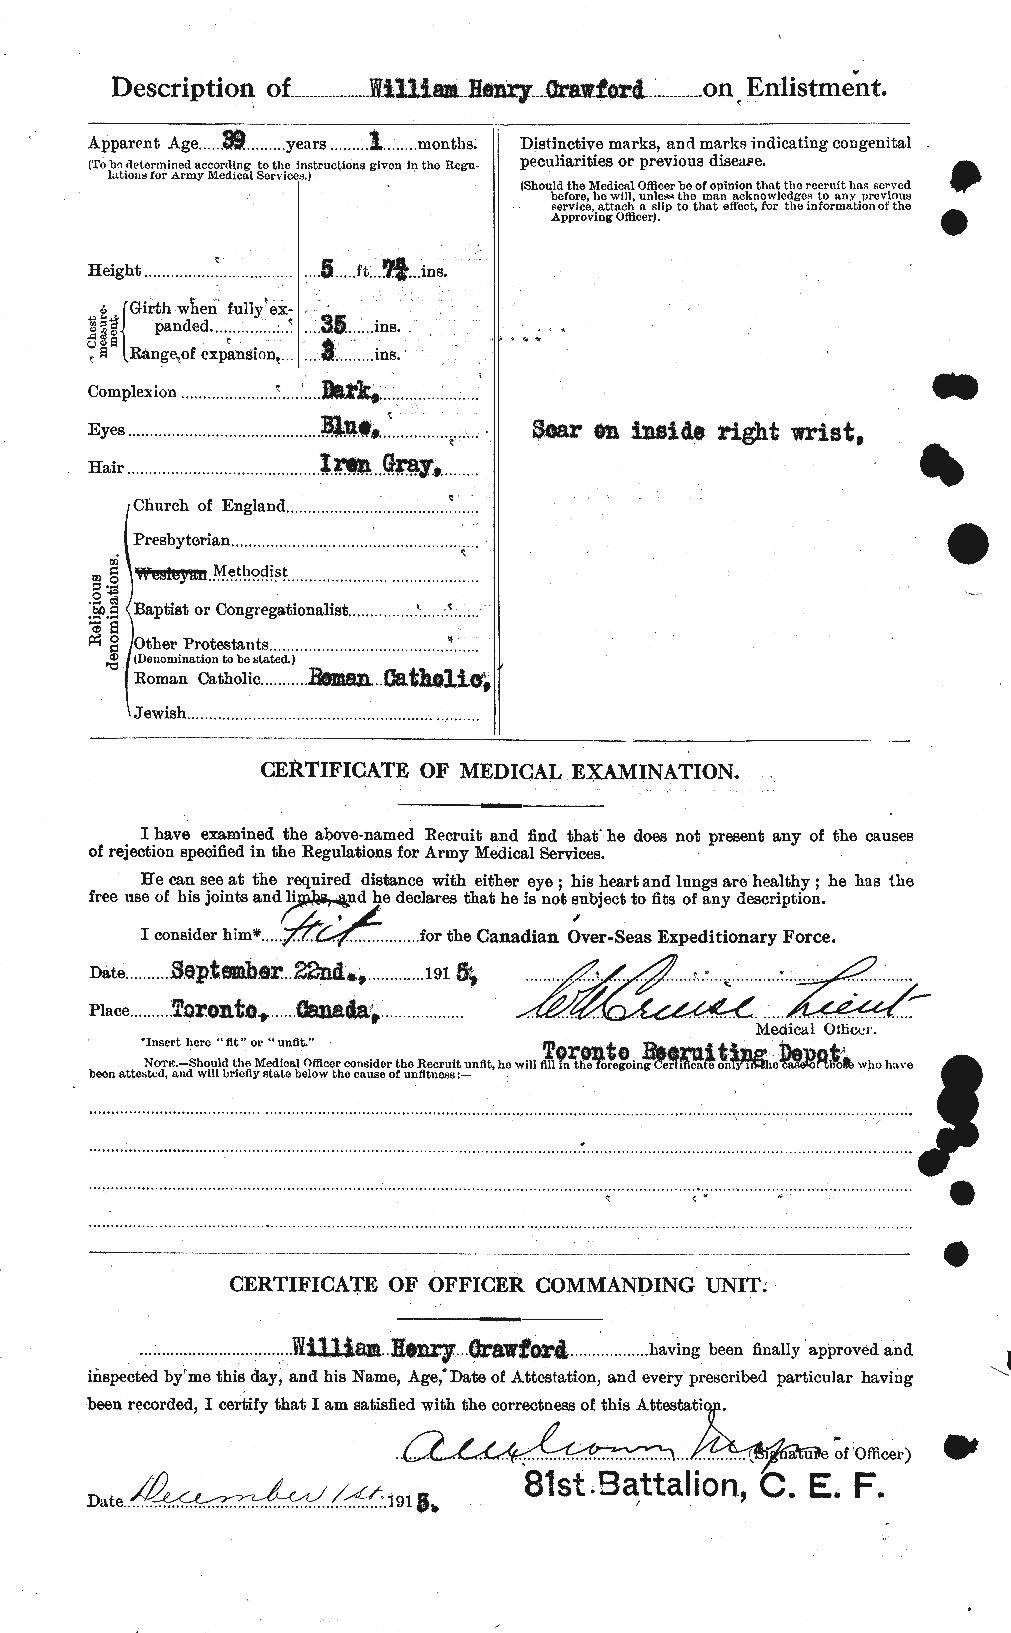 Dossiers du Personnel de la Première Guerre mondiale - CEC 061138b